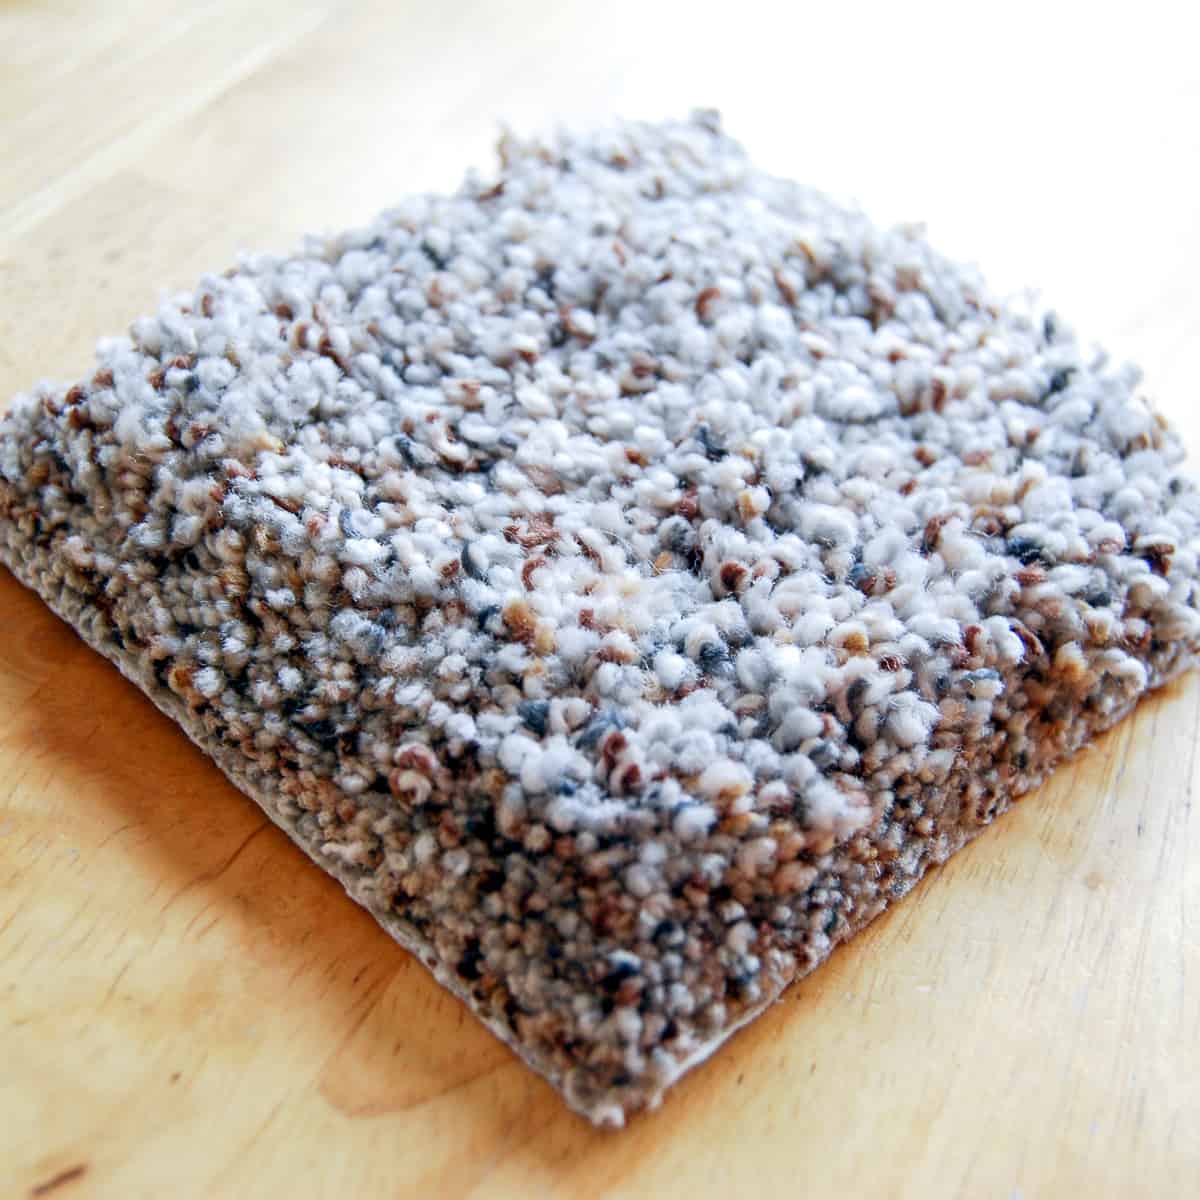 carpet sample on hardwood floor